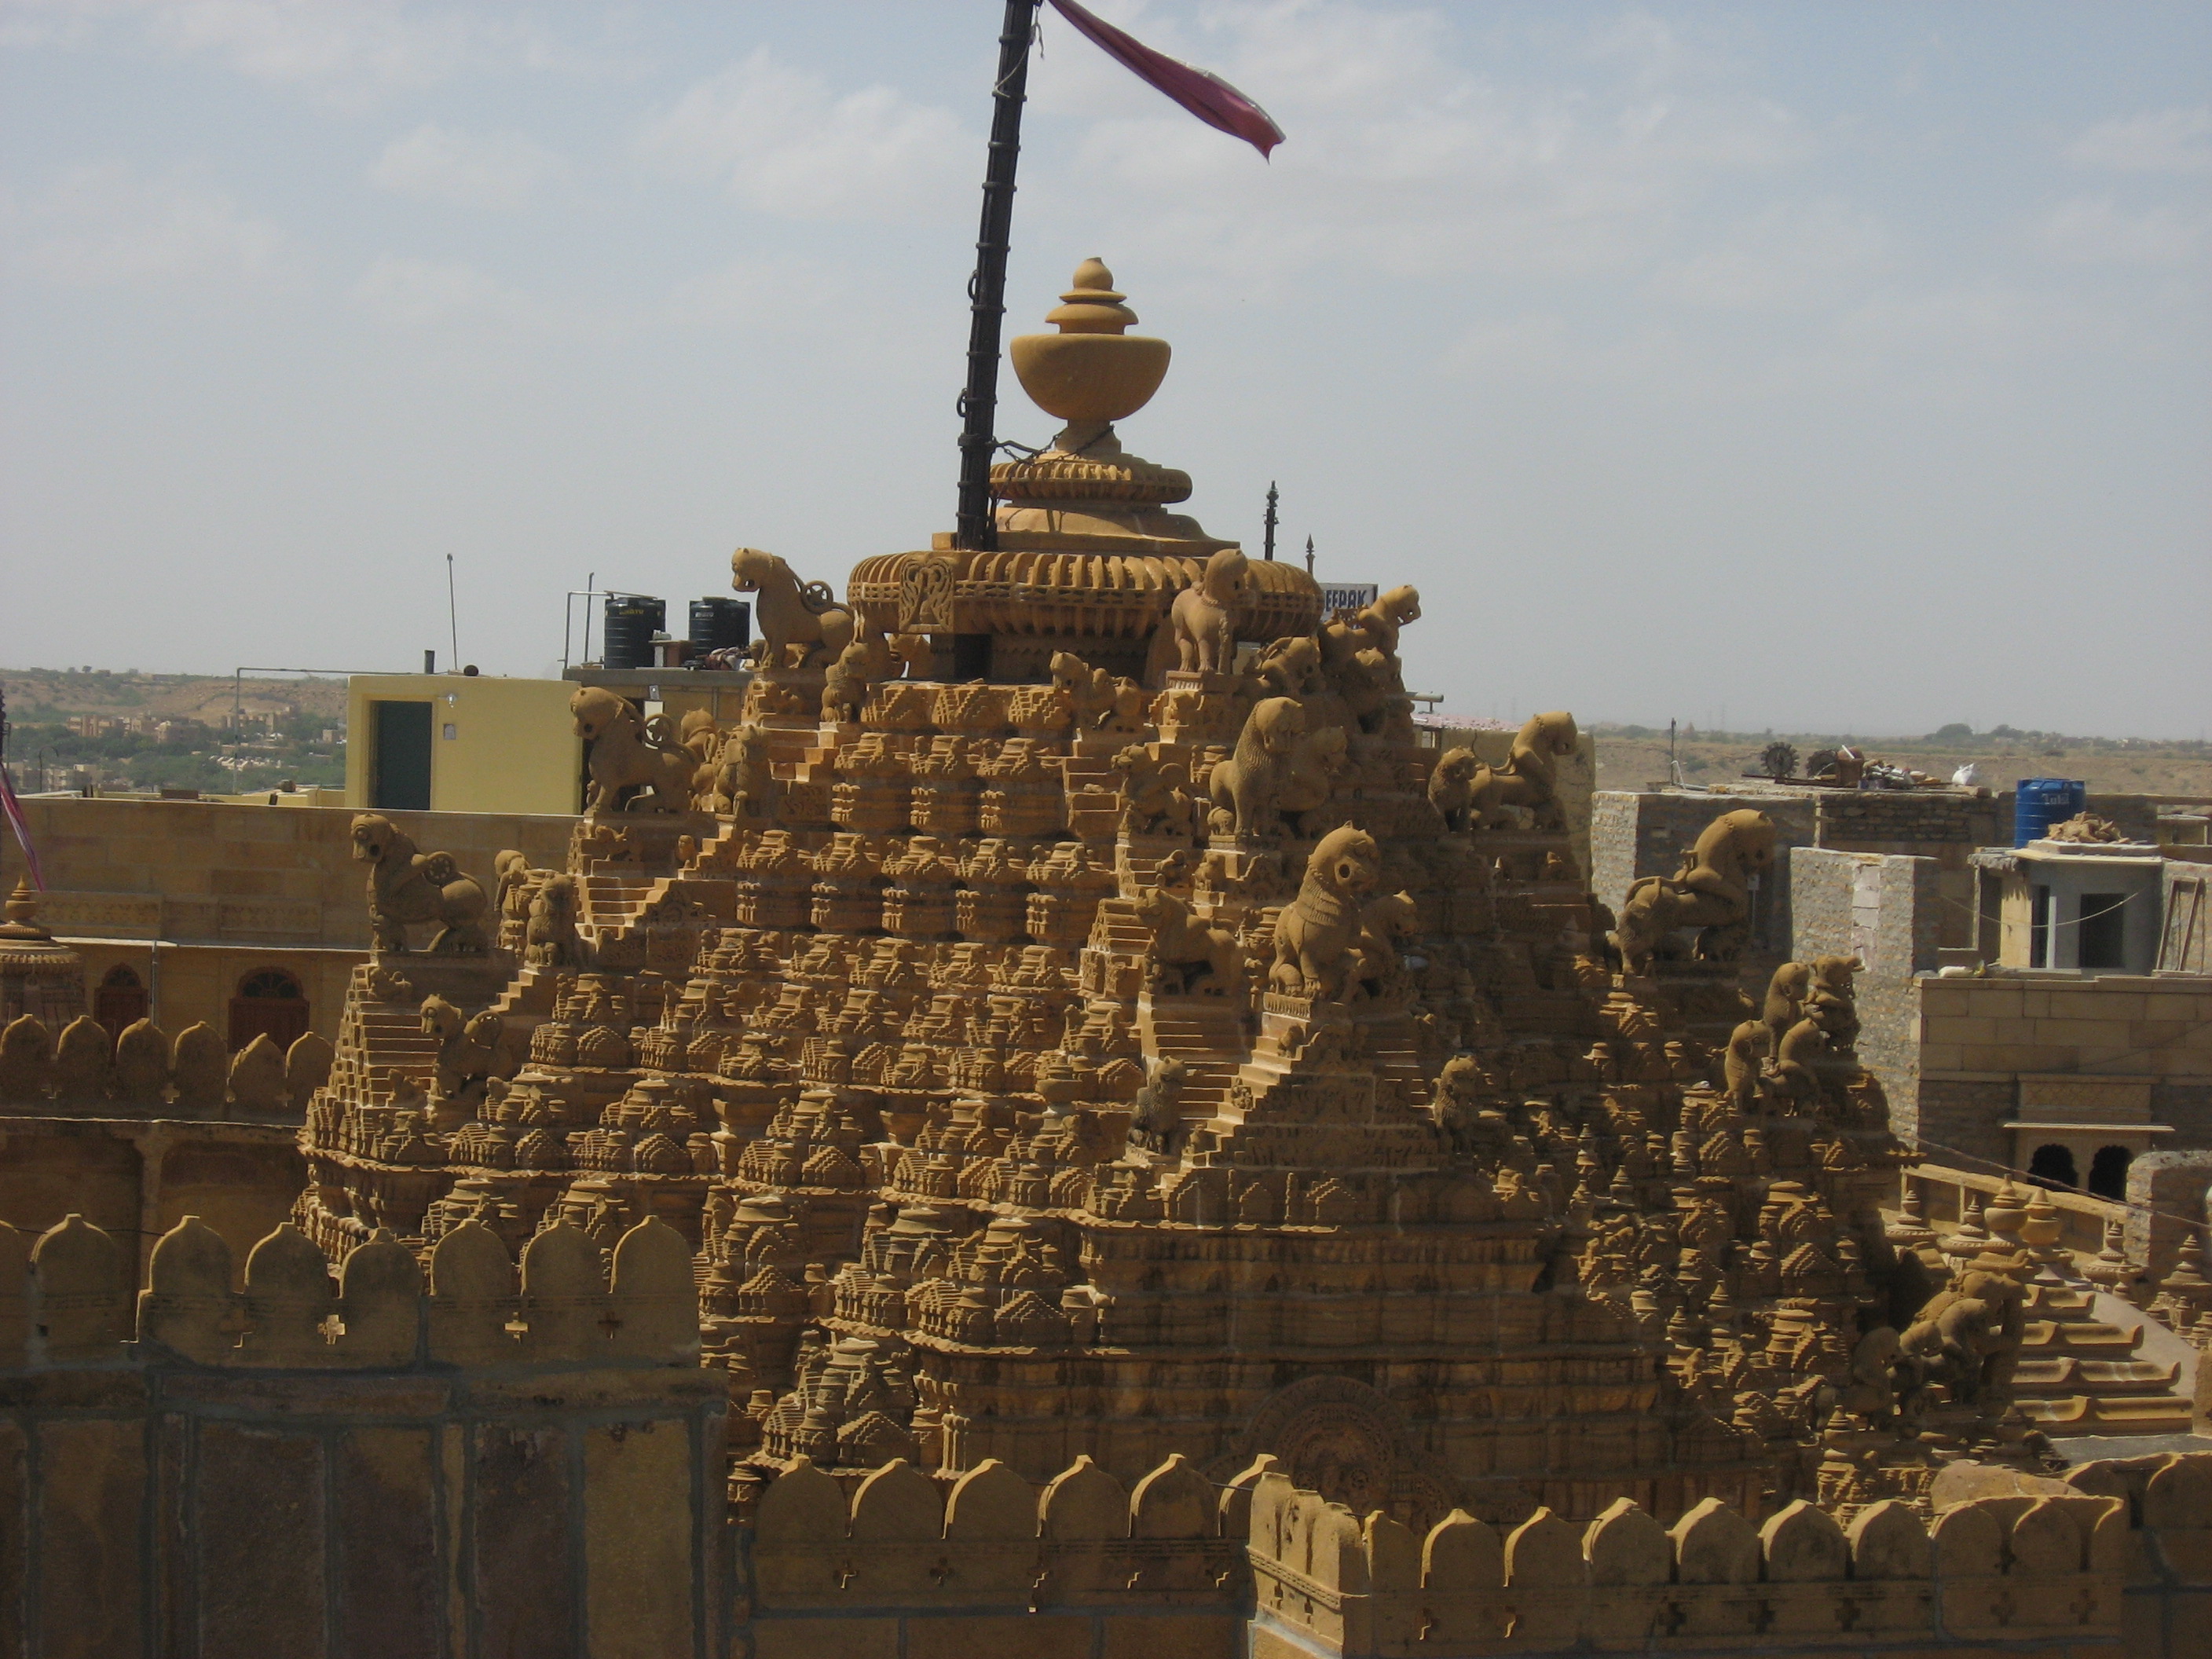 Jain temple in Jaisalmer